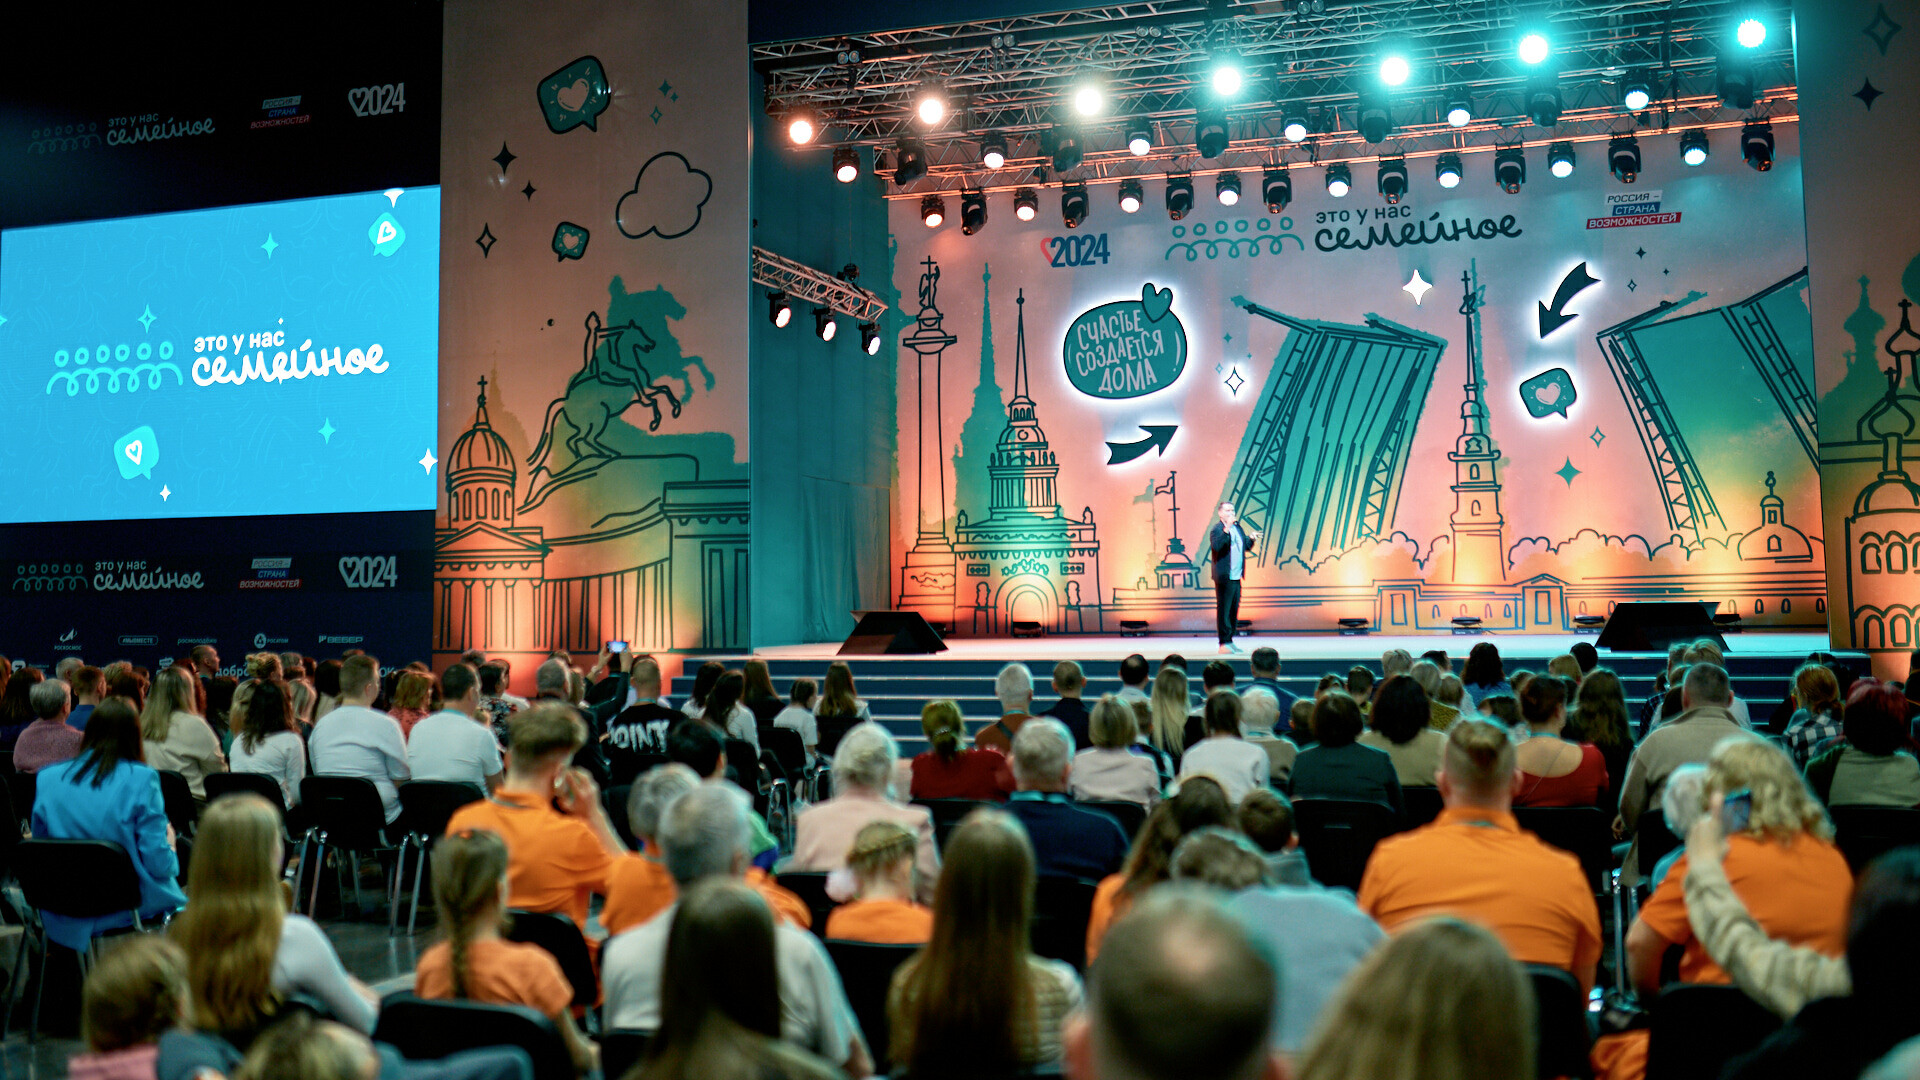 В Санкт-Петербурге стартовал первый полуфинал конкурса «Это у нас семейное»